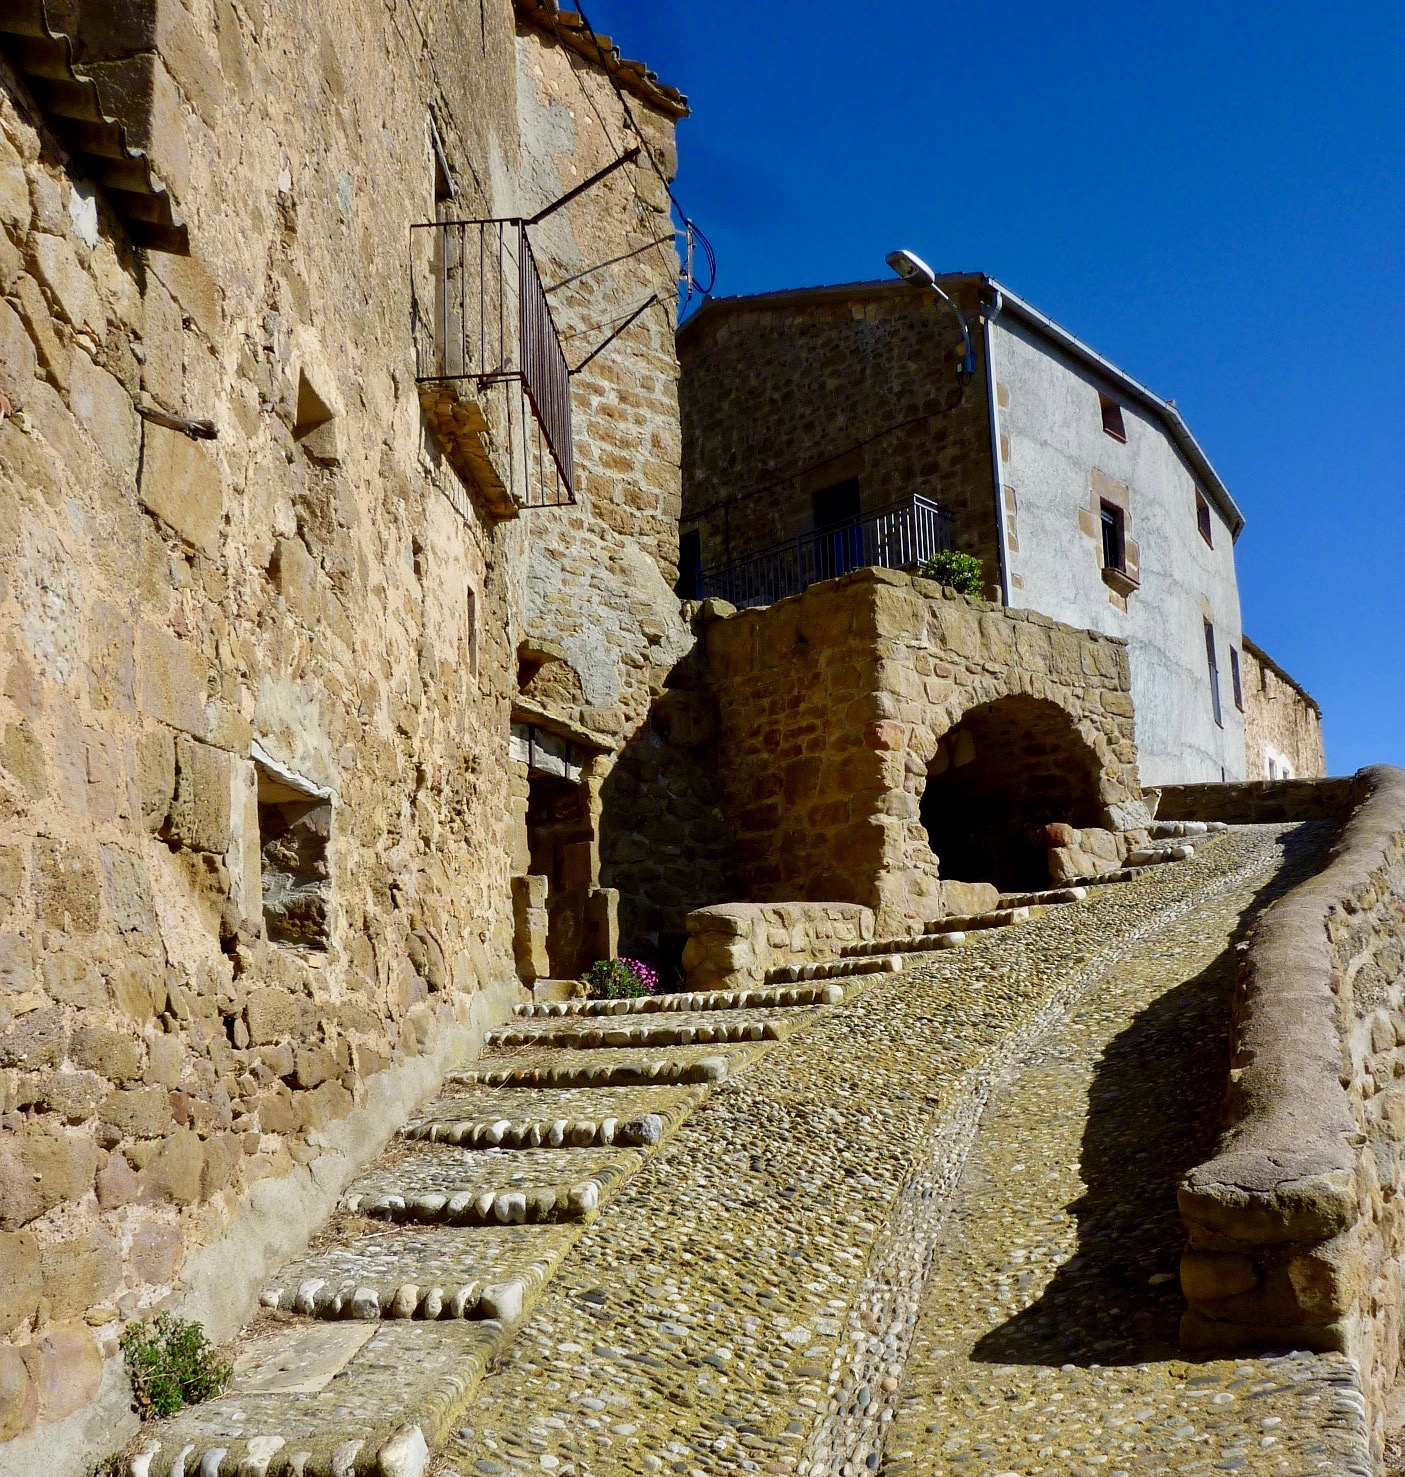 Detalle del pueblo de Politg, escaleras de piedra y fachada de casa antigua